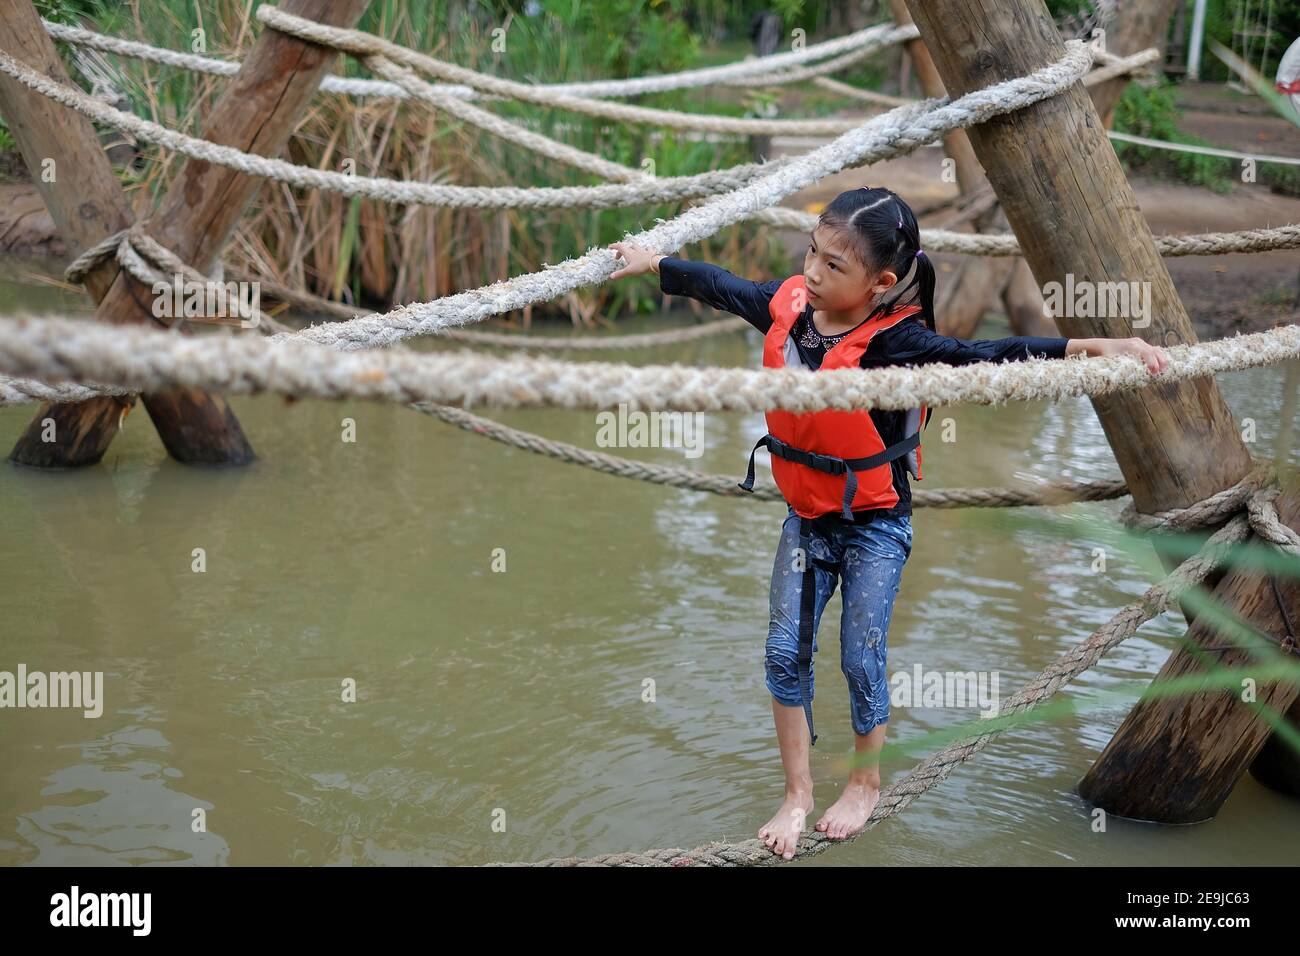 Une jeune fille asiatique mignonne avec un gilet de sauvetage orange traverse un parcours d'obstacles dans un camp d'été avec une corde serrée suspendue au-dessus de l'eau. Banque D'Images